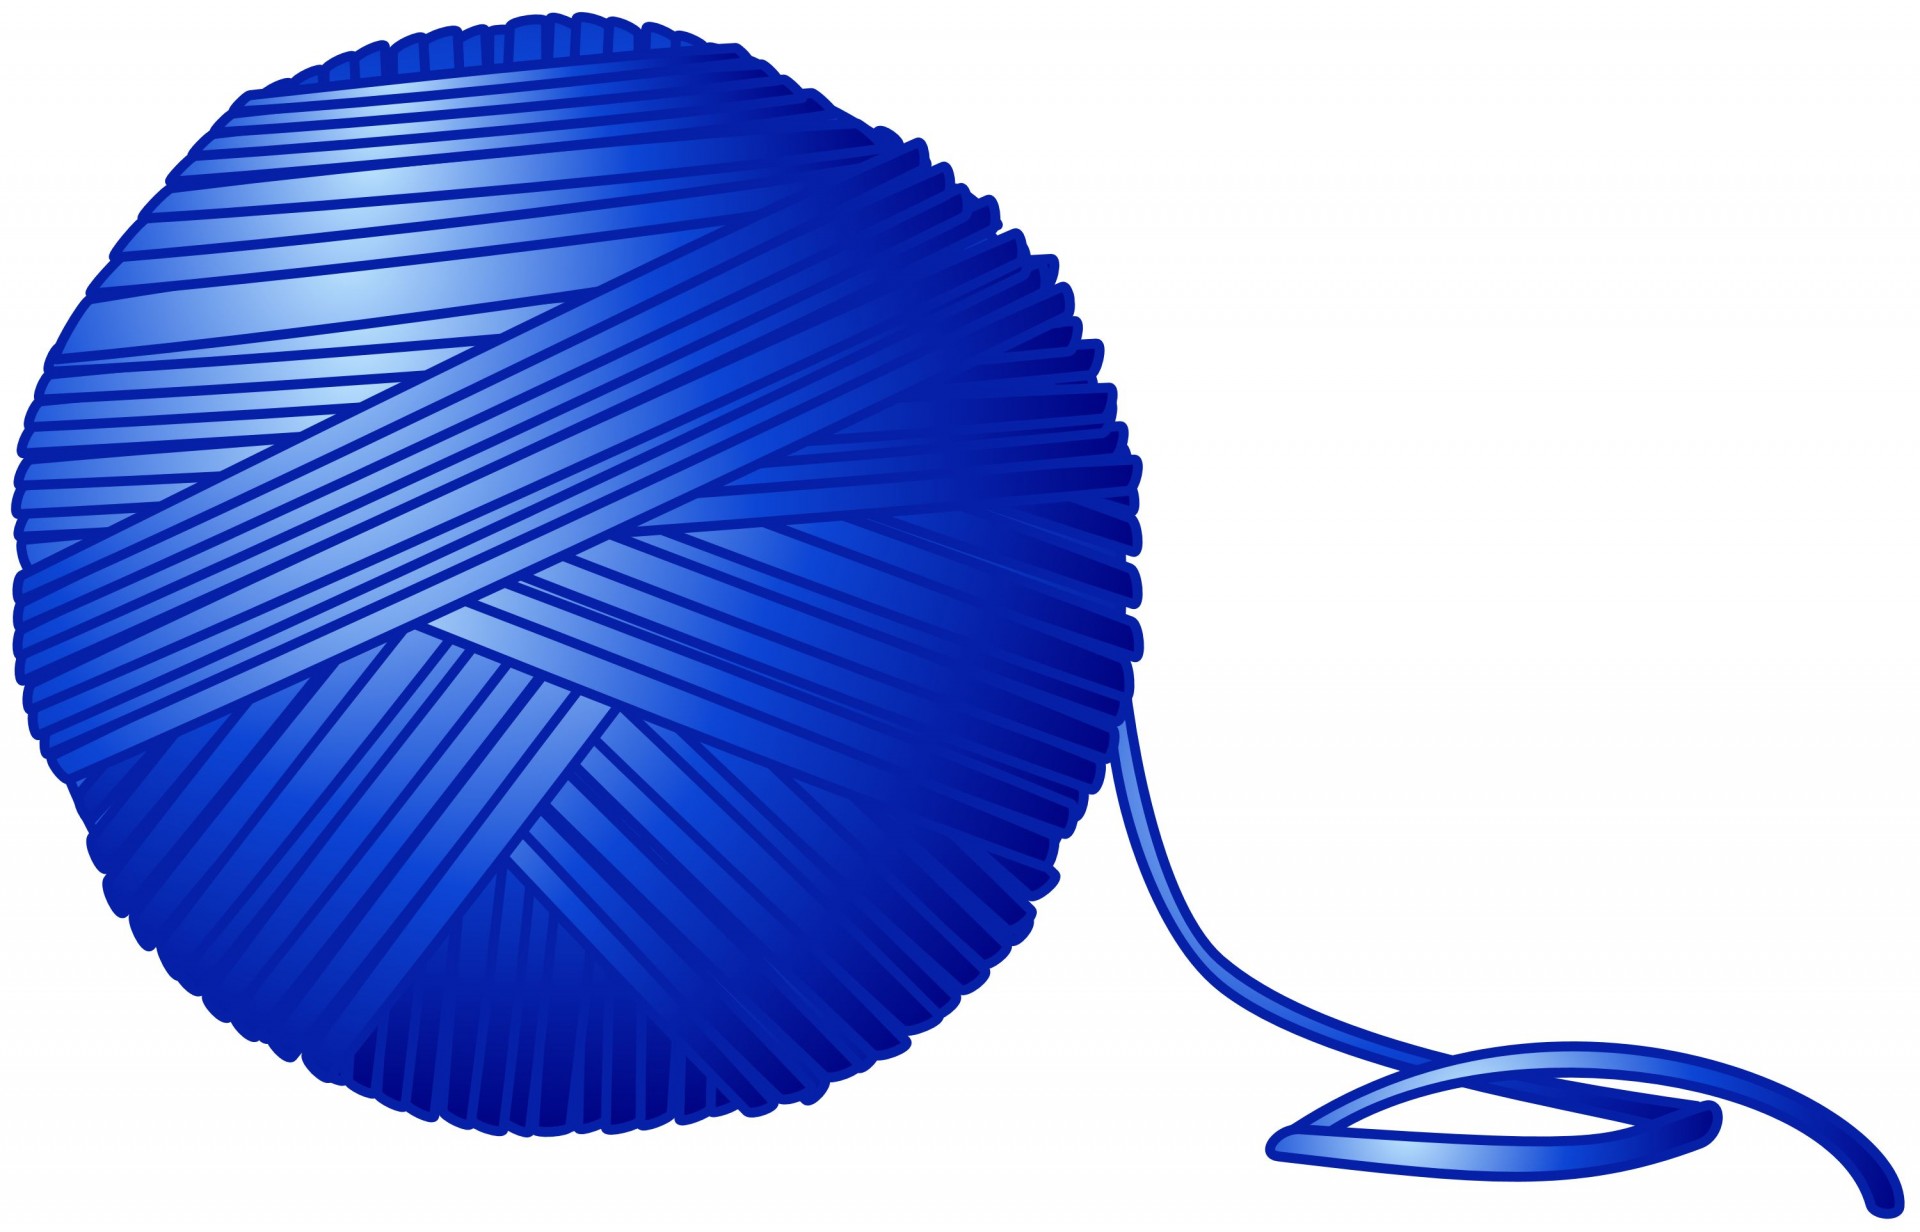 blue-ball-of-yarn.jpg